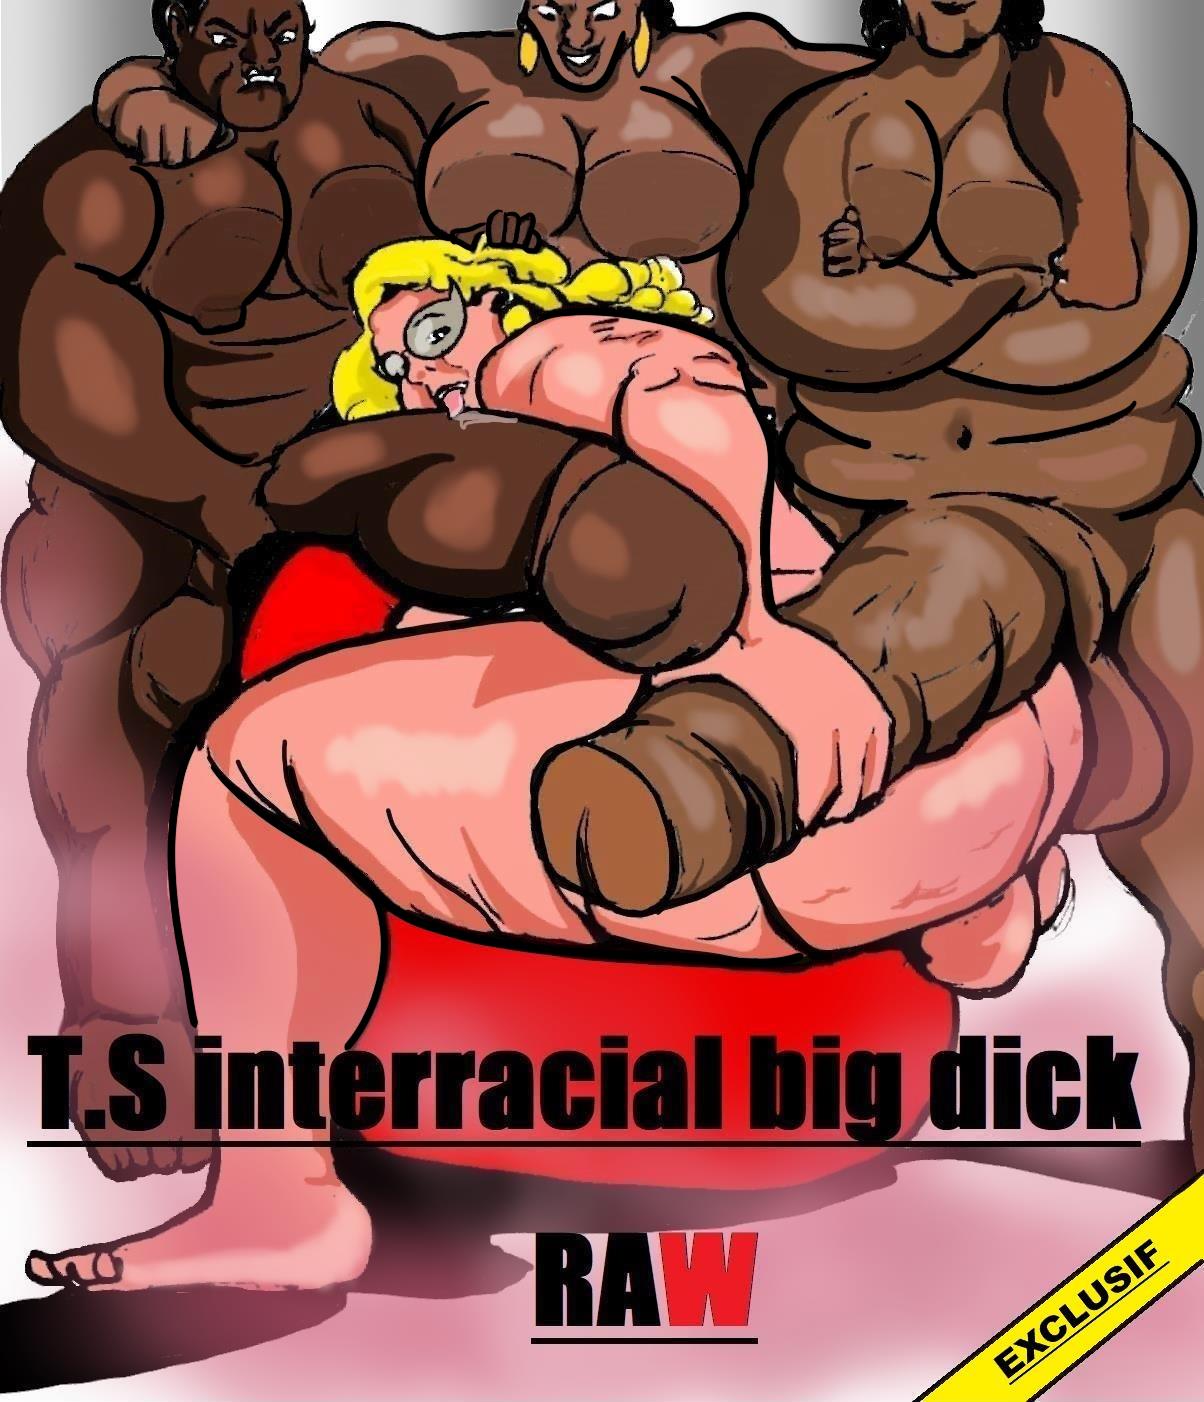 1204px x 1402px - Shemale Interracial Big Dick Raw- Carter Tyron - Porn Cartoon Comics